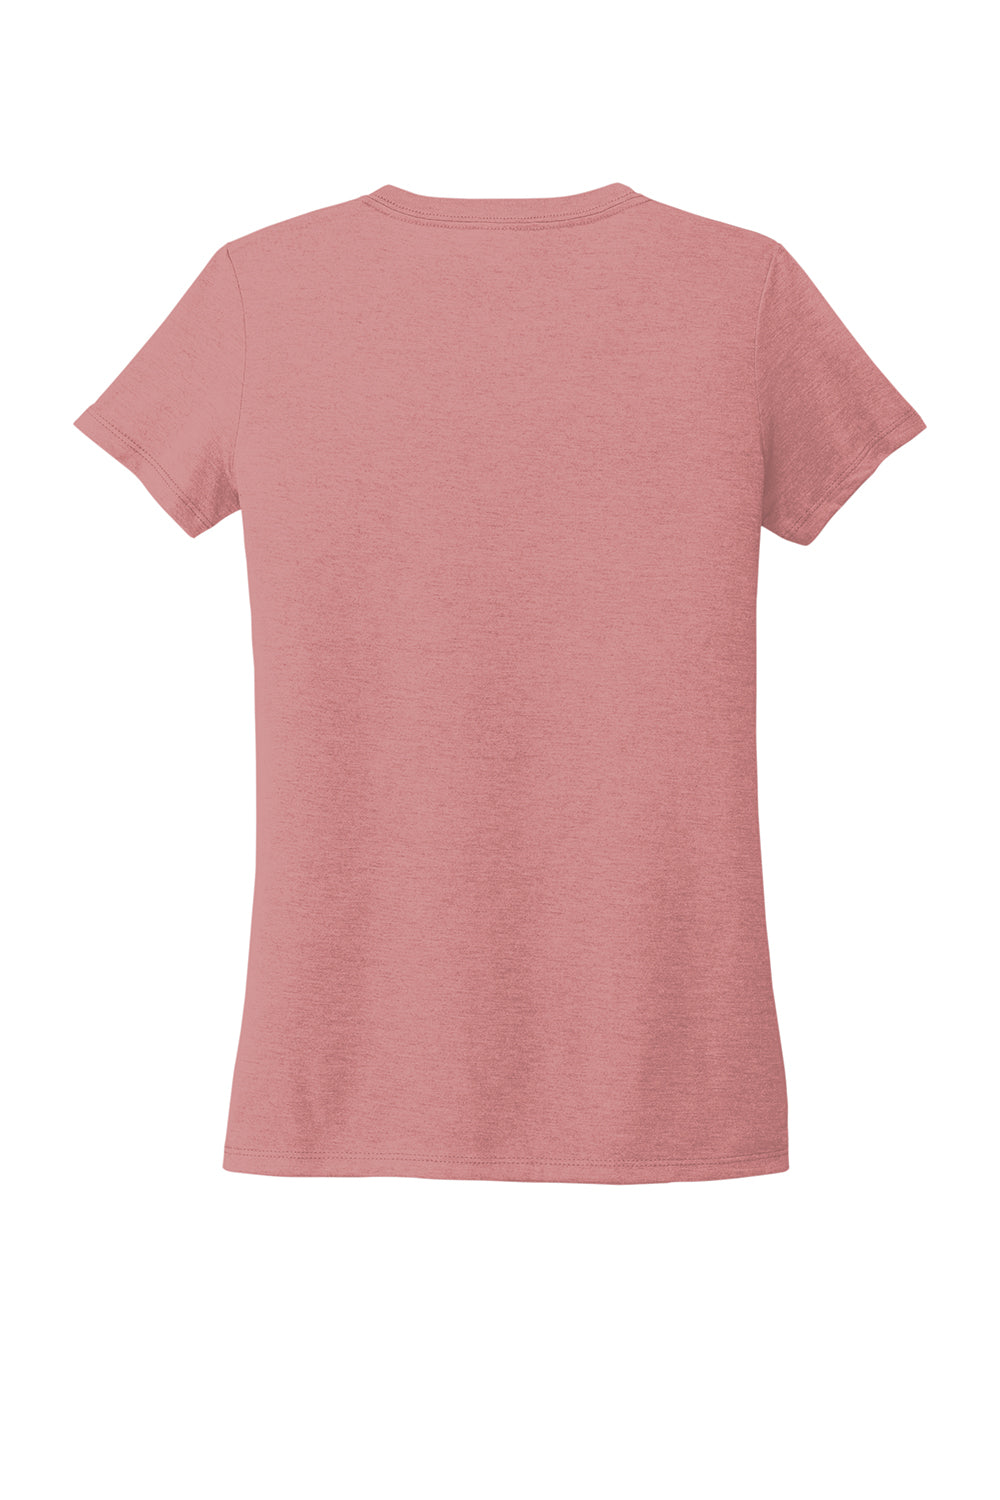 Allmade AL2018 Womens Short Sleeve V-Neck T-Shirt Vintage Rose Pink Flat Back